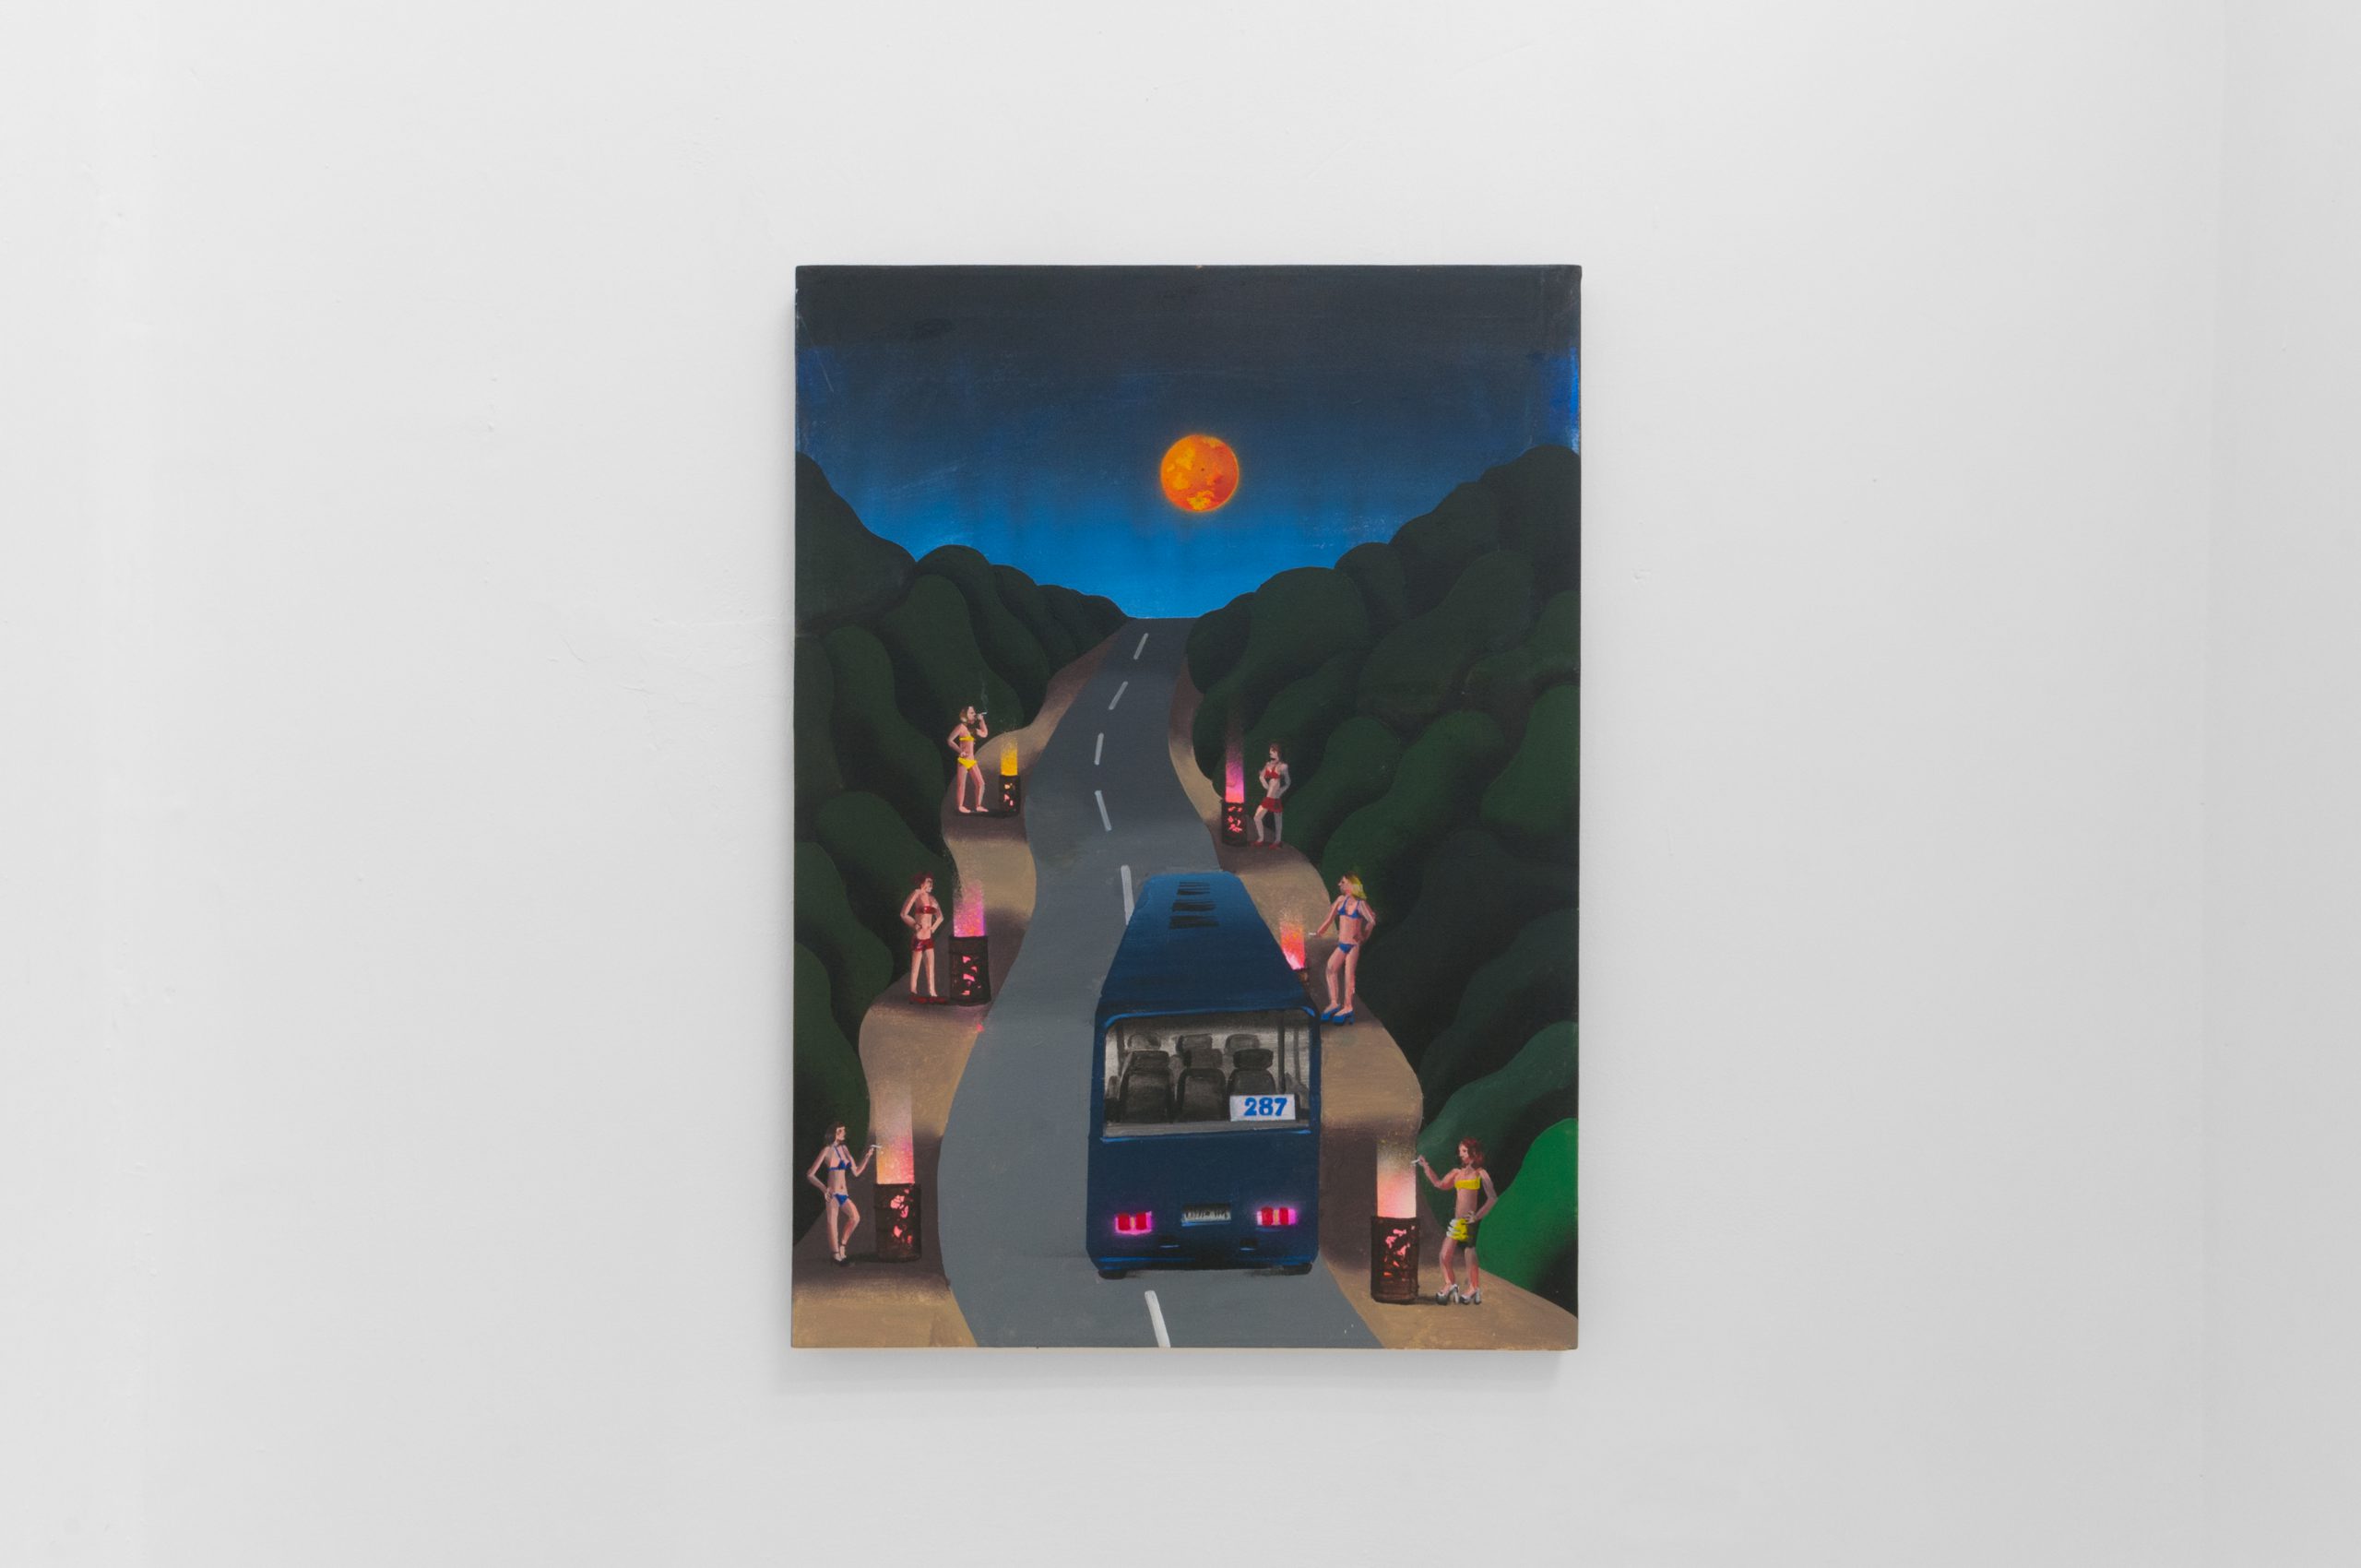 Botond Keresztesi, Night Bus, 2016, Acrylic on canvas, 70x50cm.